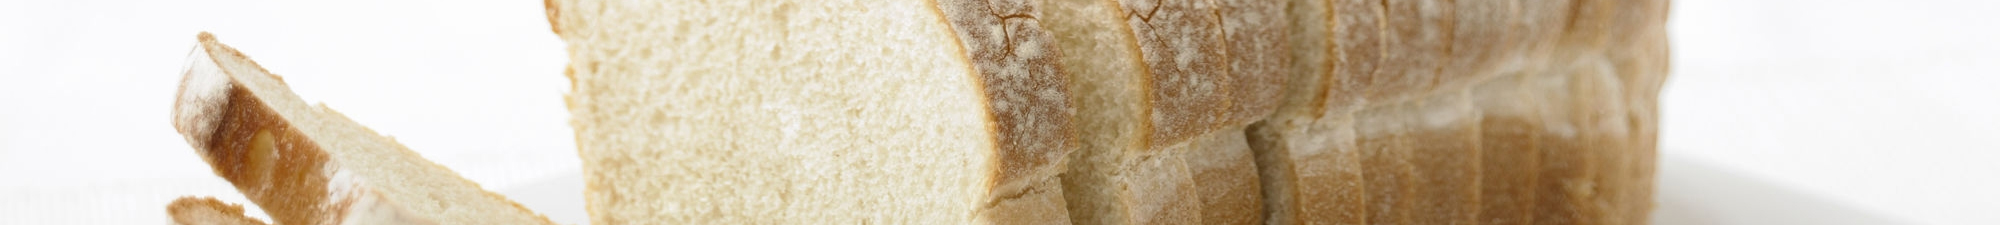 Pão de Forma e Embalado